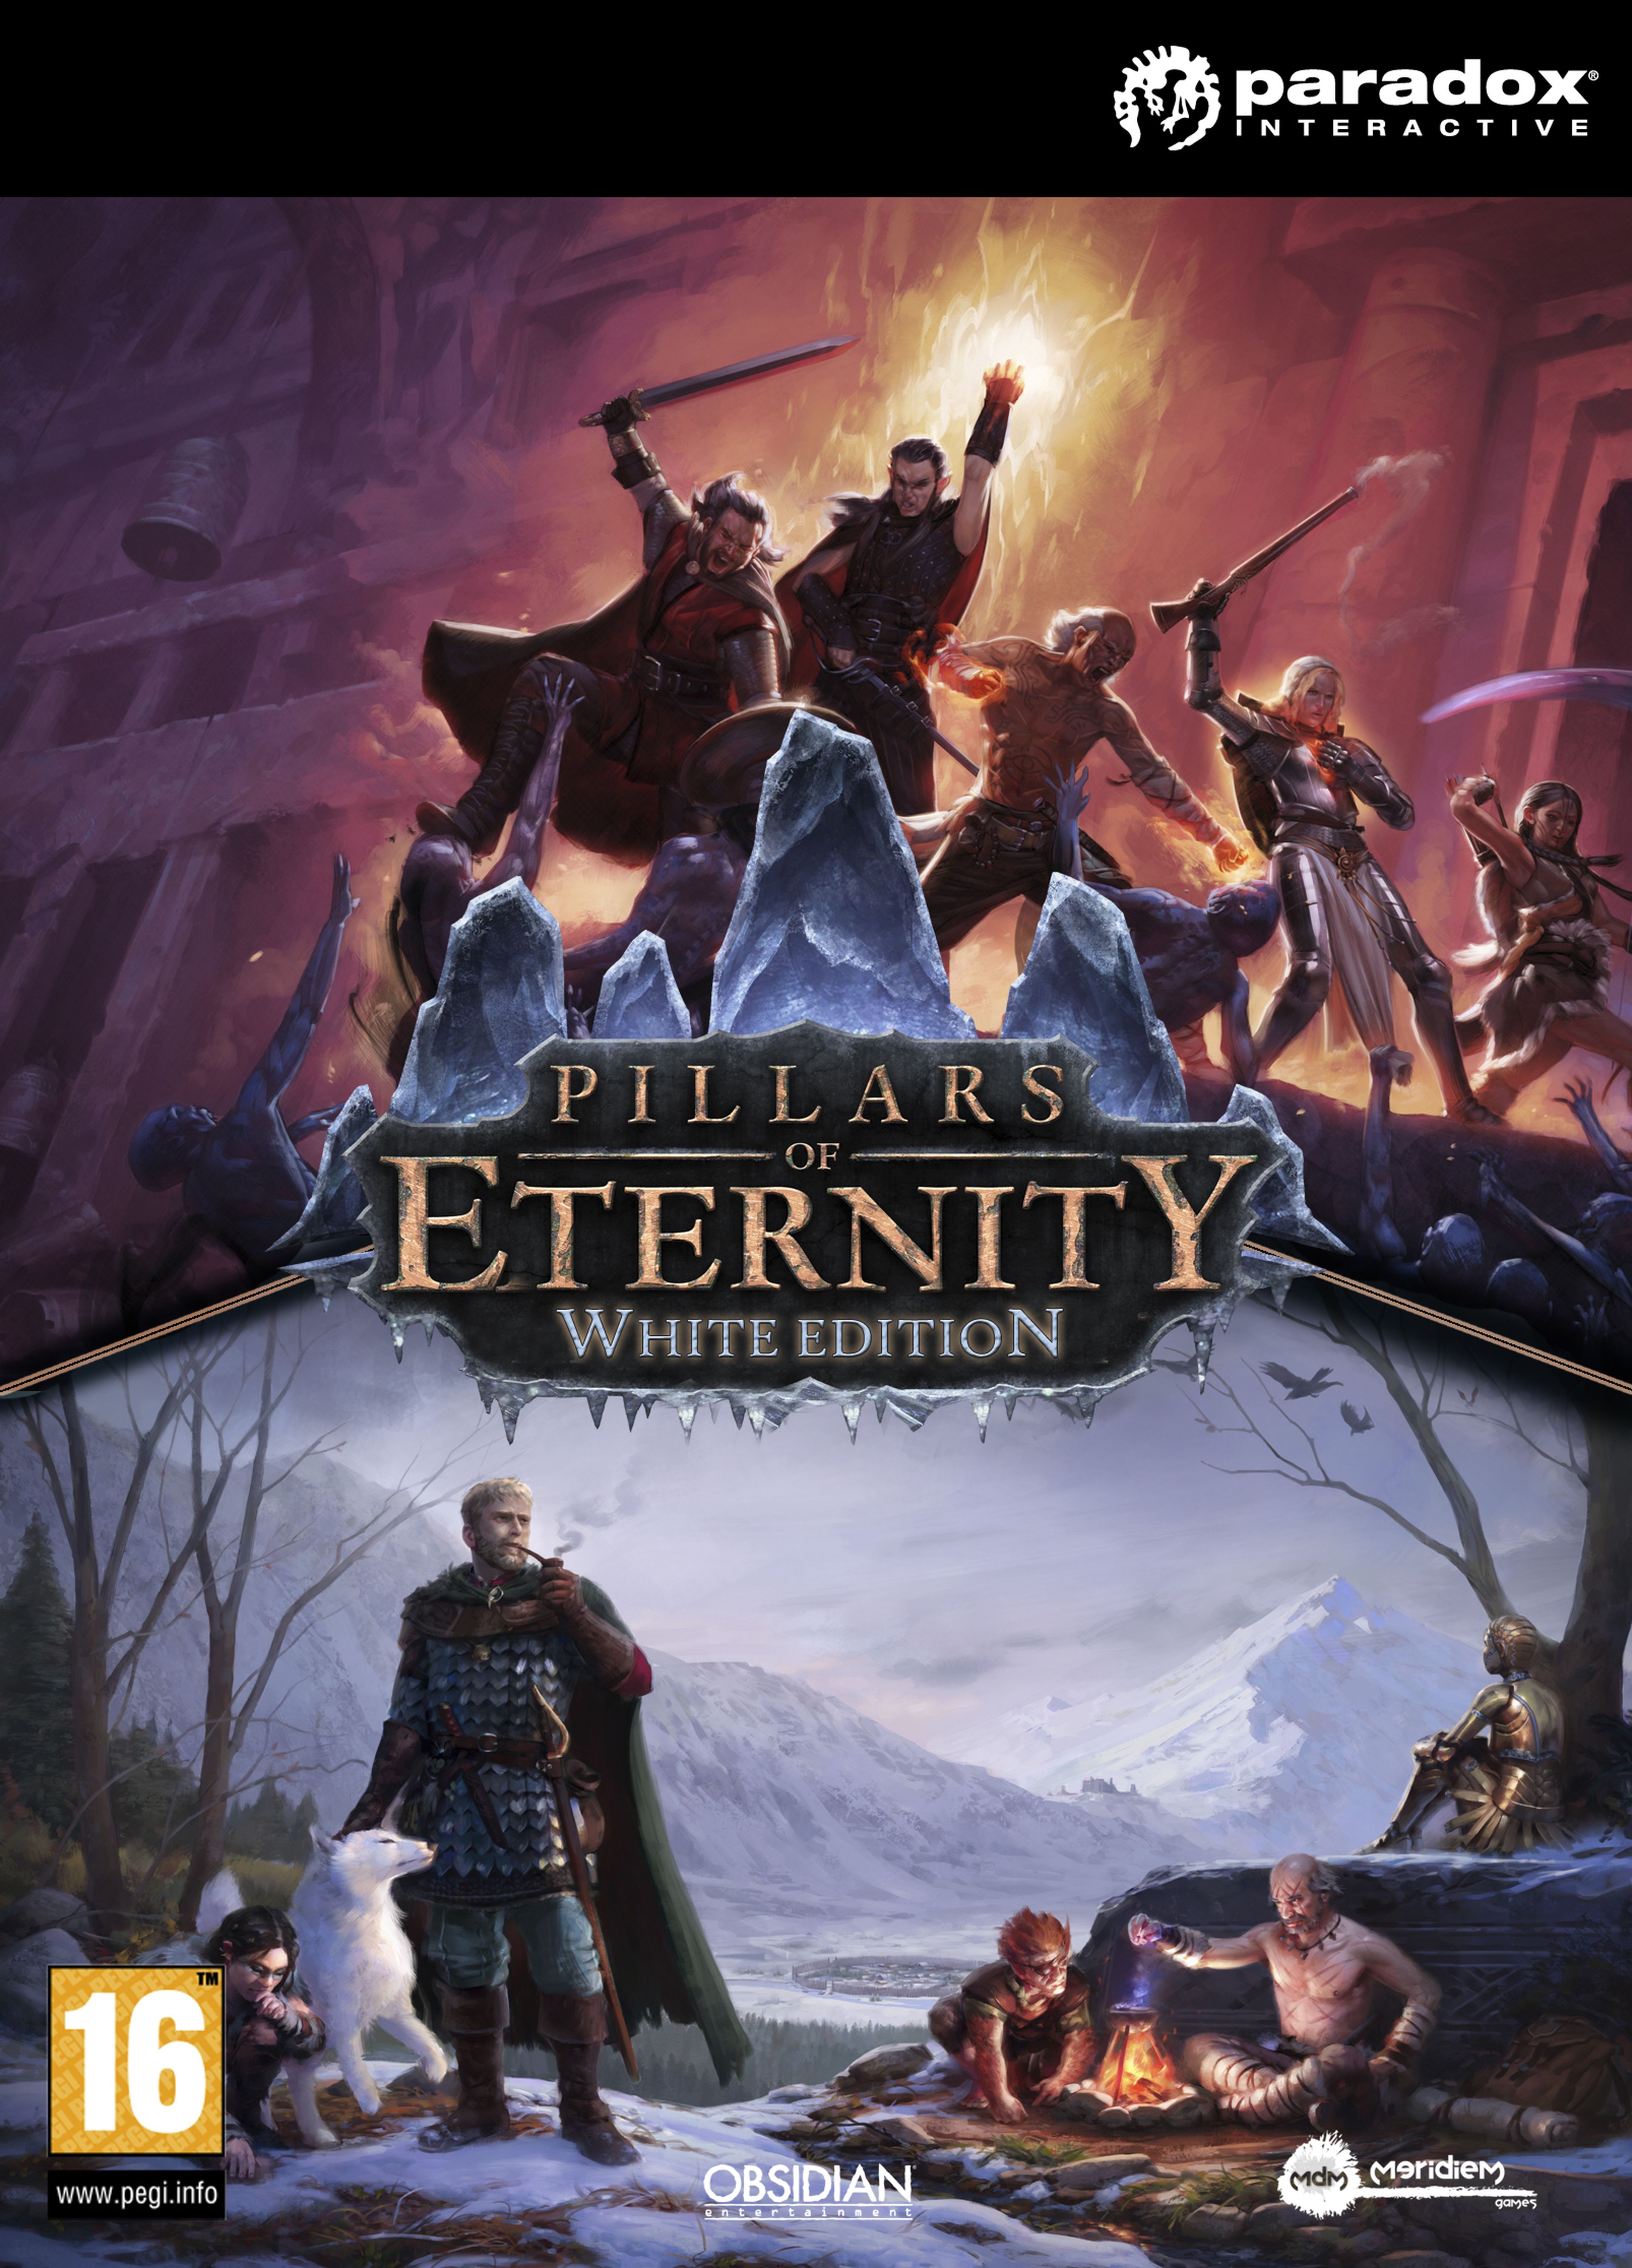 Pillars of Eternity White Edition - Fecha de lanzamiento, precio y contenidos